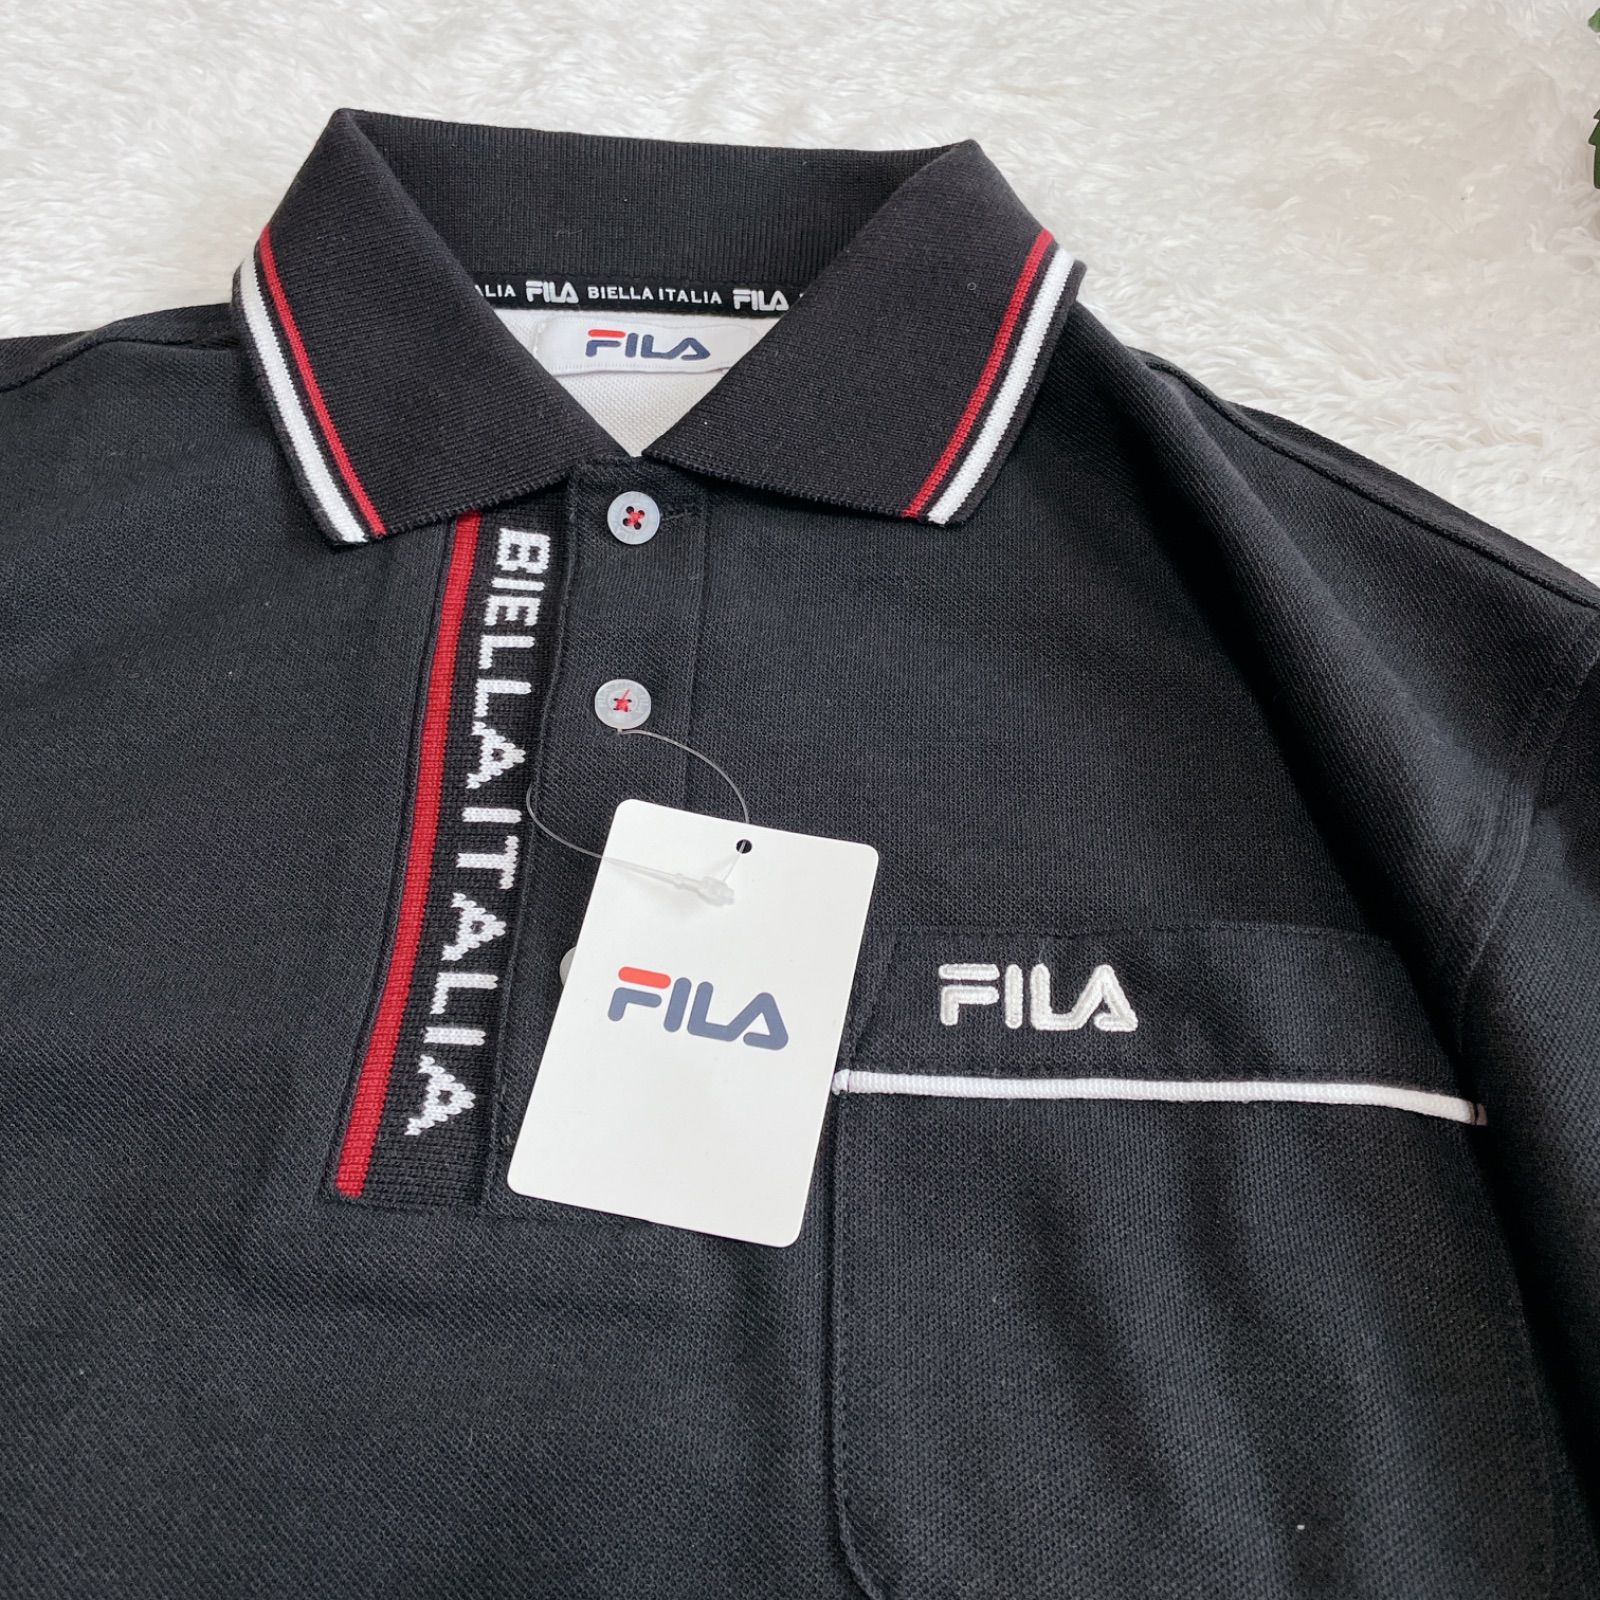 絶妙なデザイン FILA GOLF メンズ ゴルフウェア 黒 長袖ハーフジップ シャツ 3L